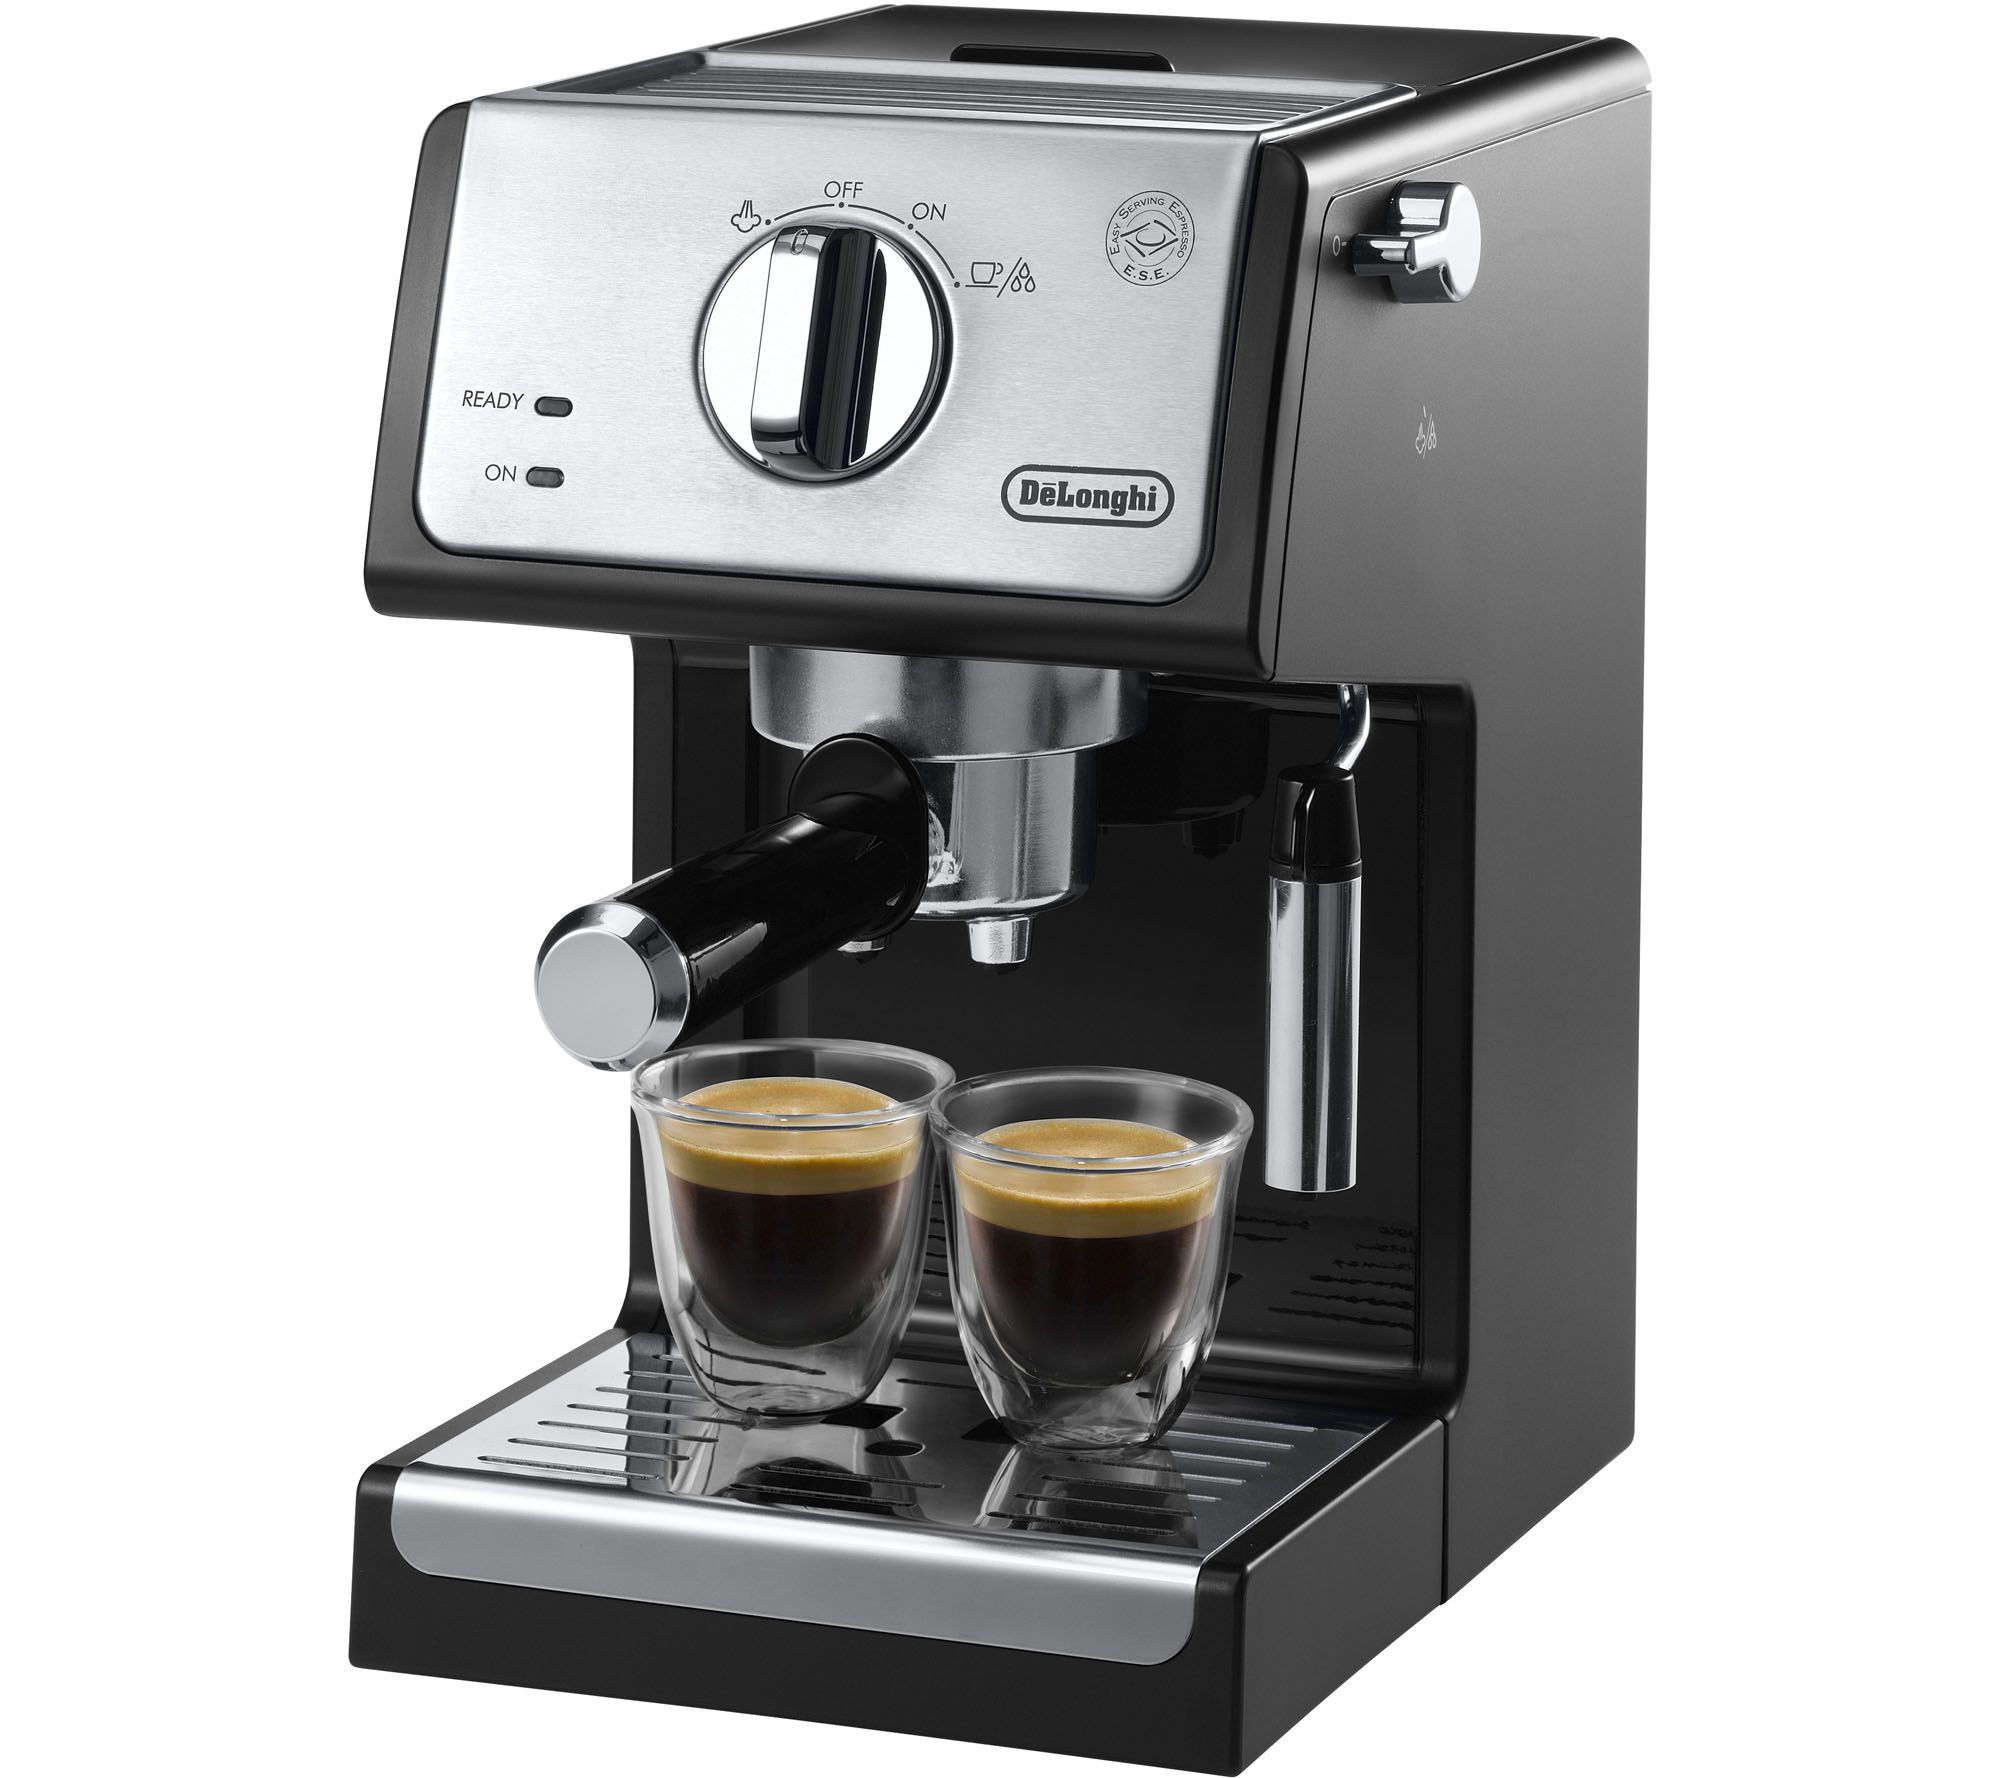 What is a 15 bar pump espresso maker